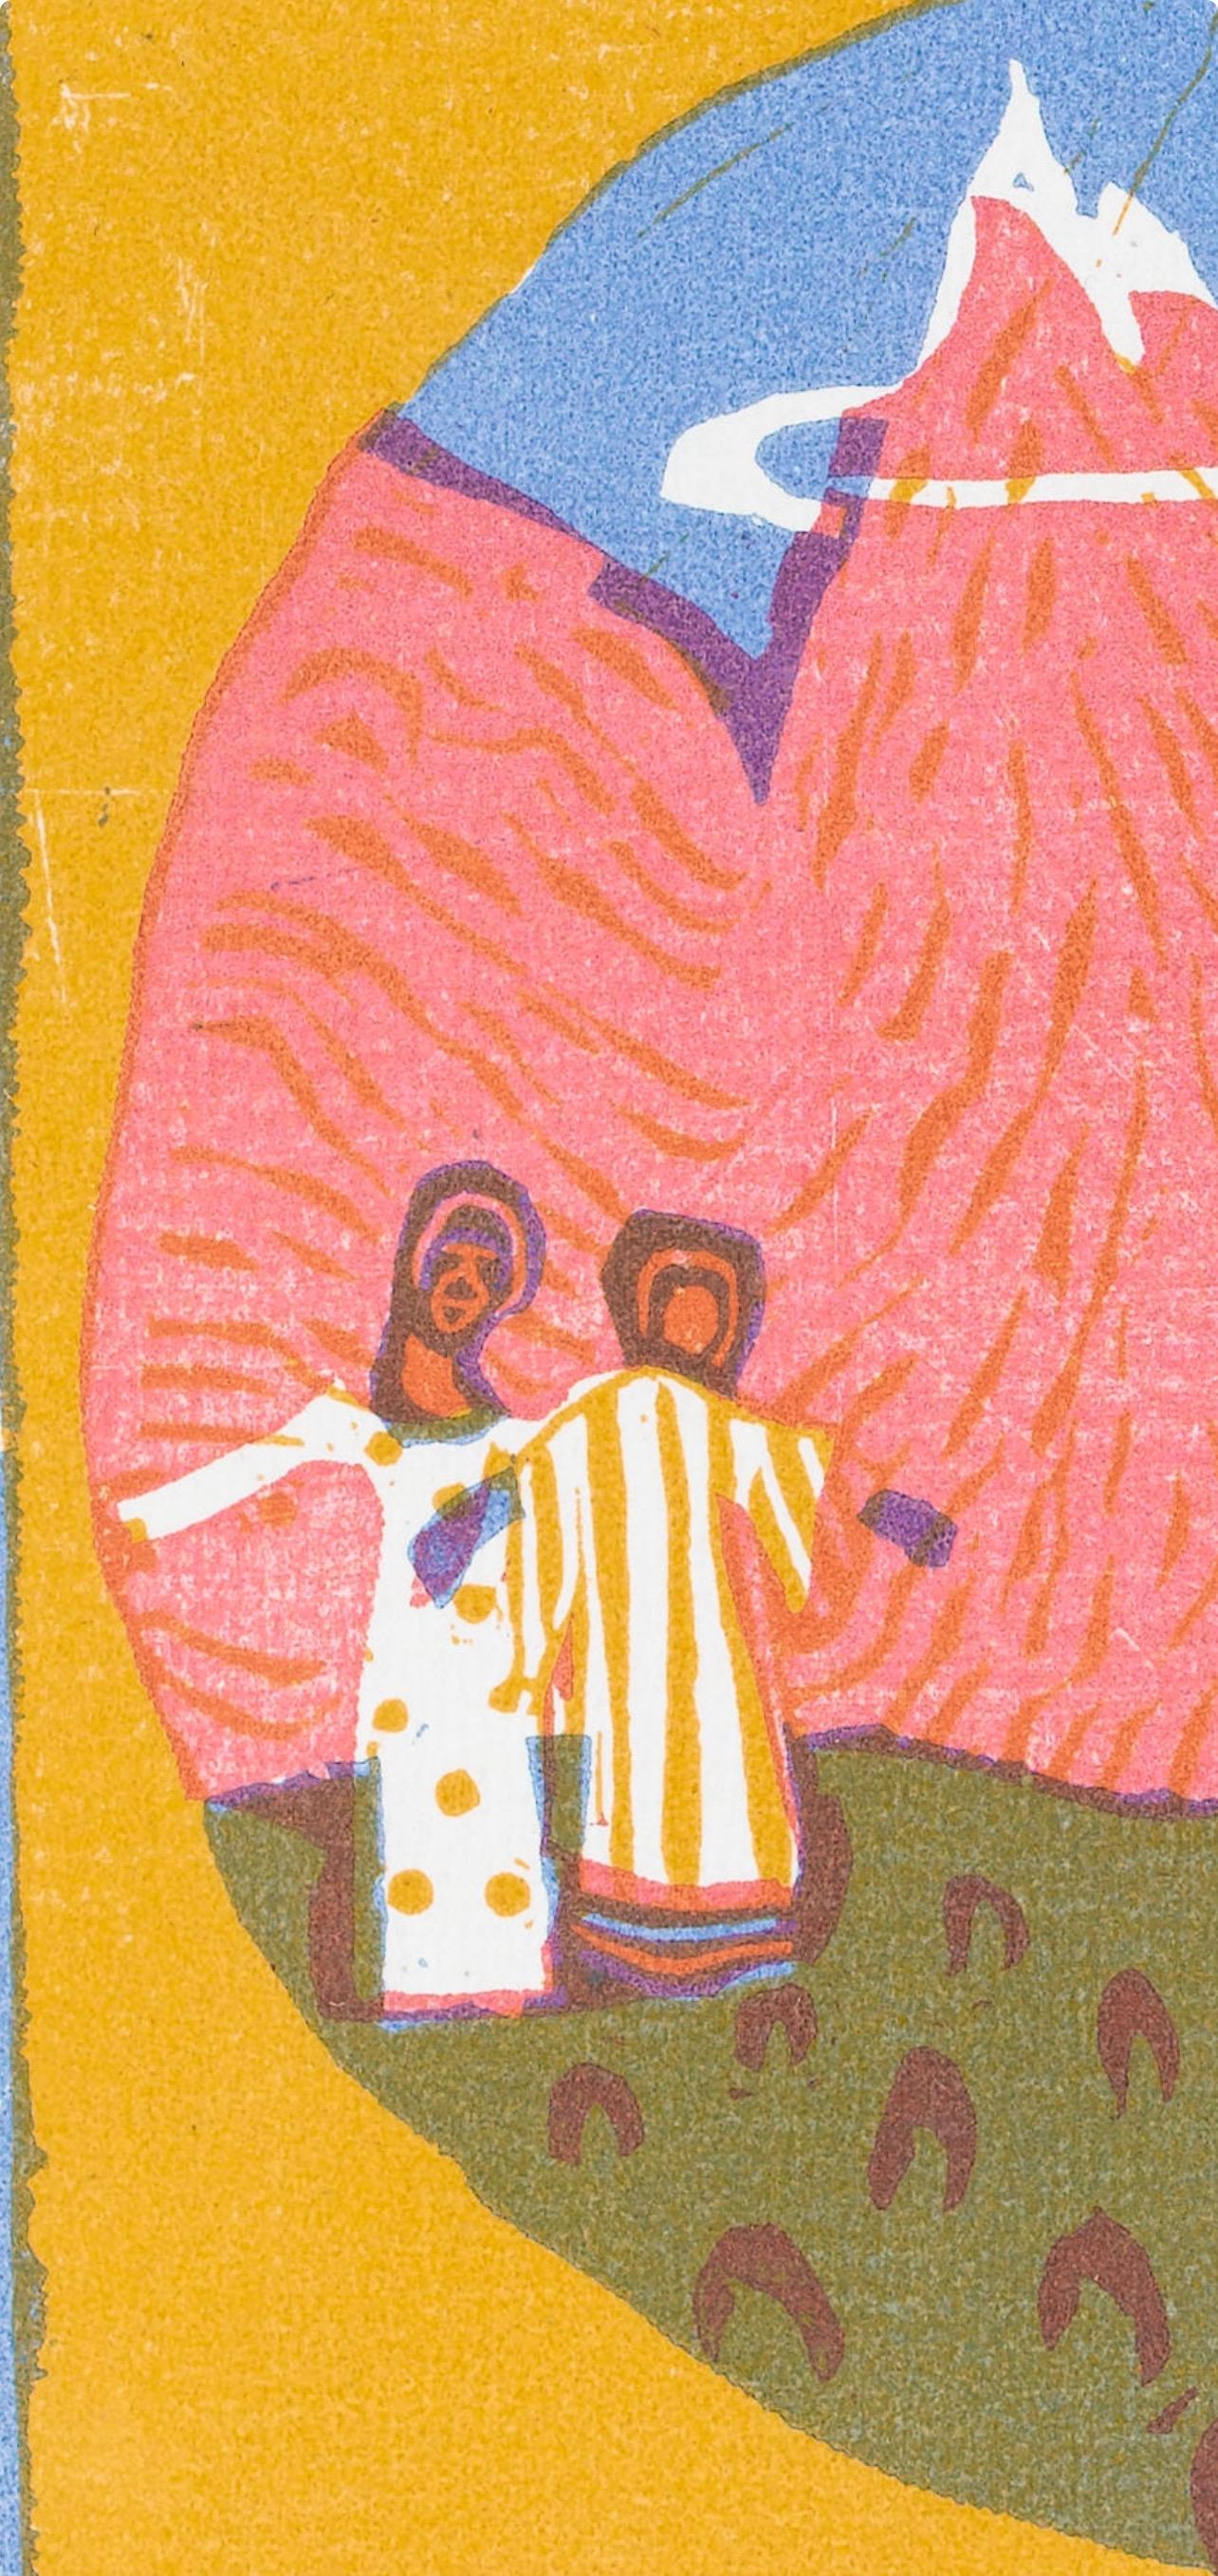 Kandinsky, Berge, XXe Siècle (after) - Print by Wassily Kandinsky